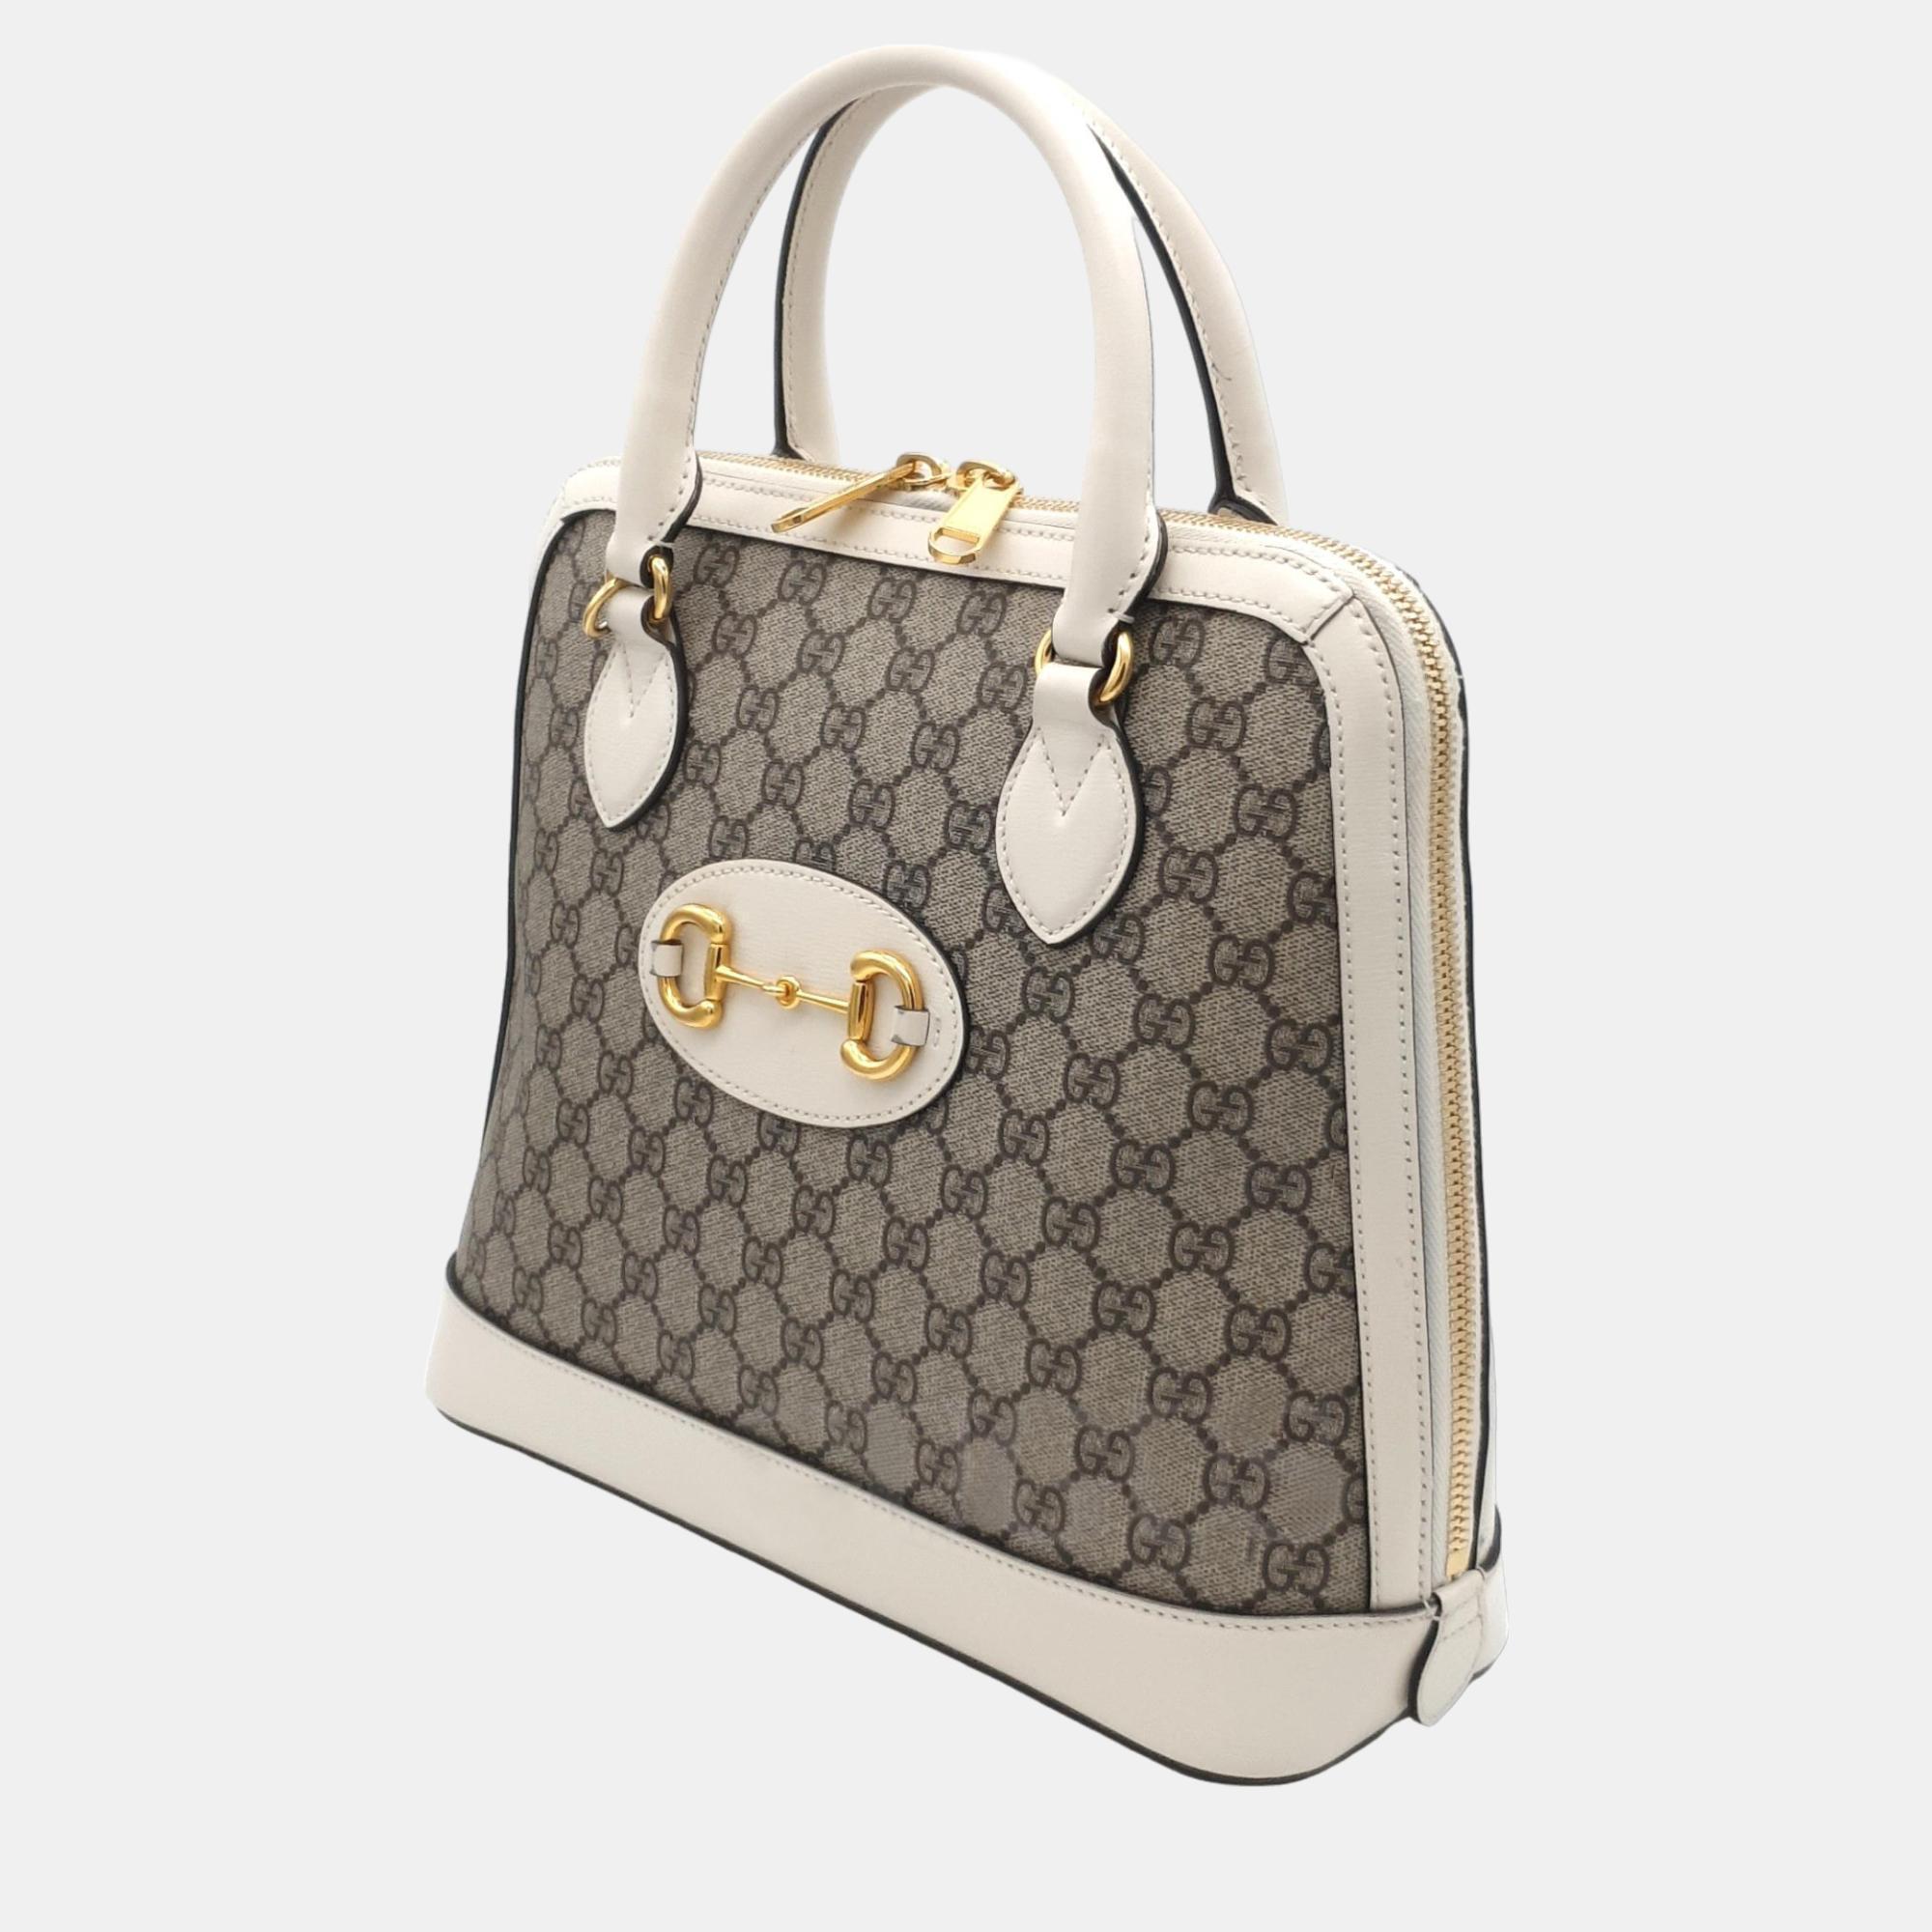 Gucci 1955 Horsebit Top Handle Bag Medium (620850)